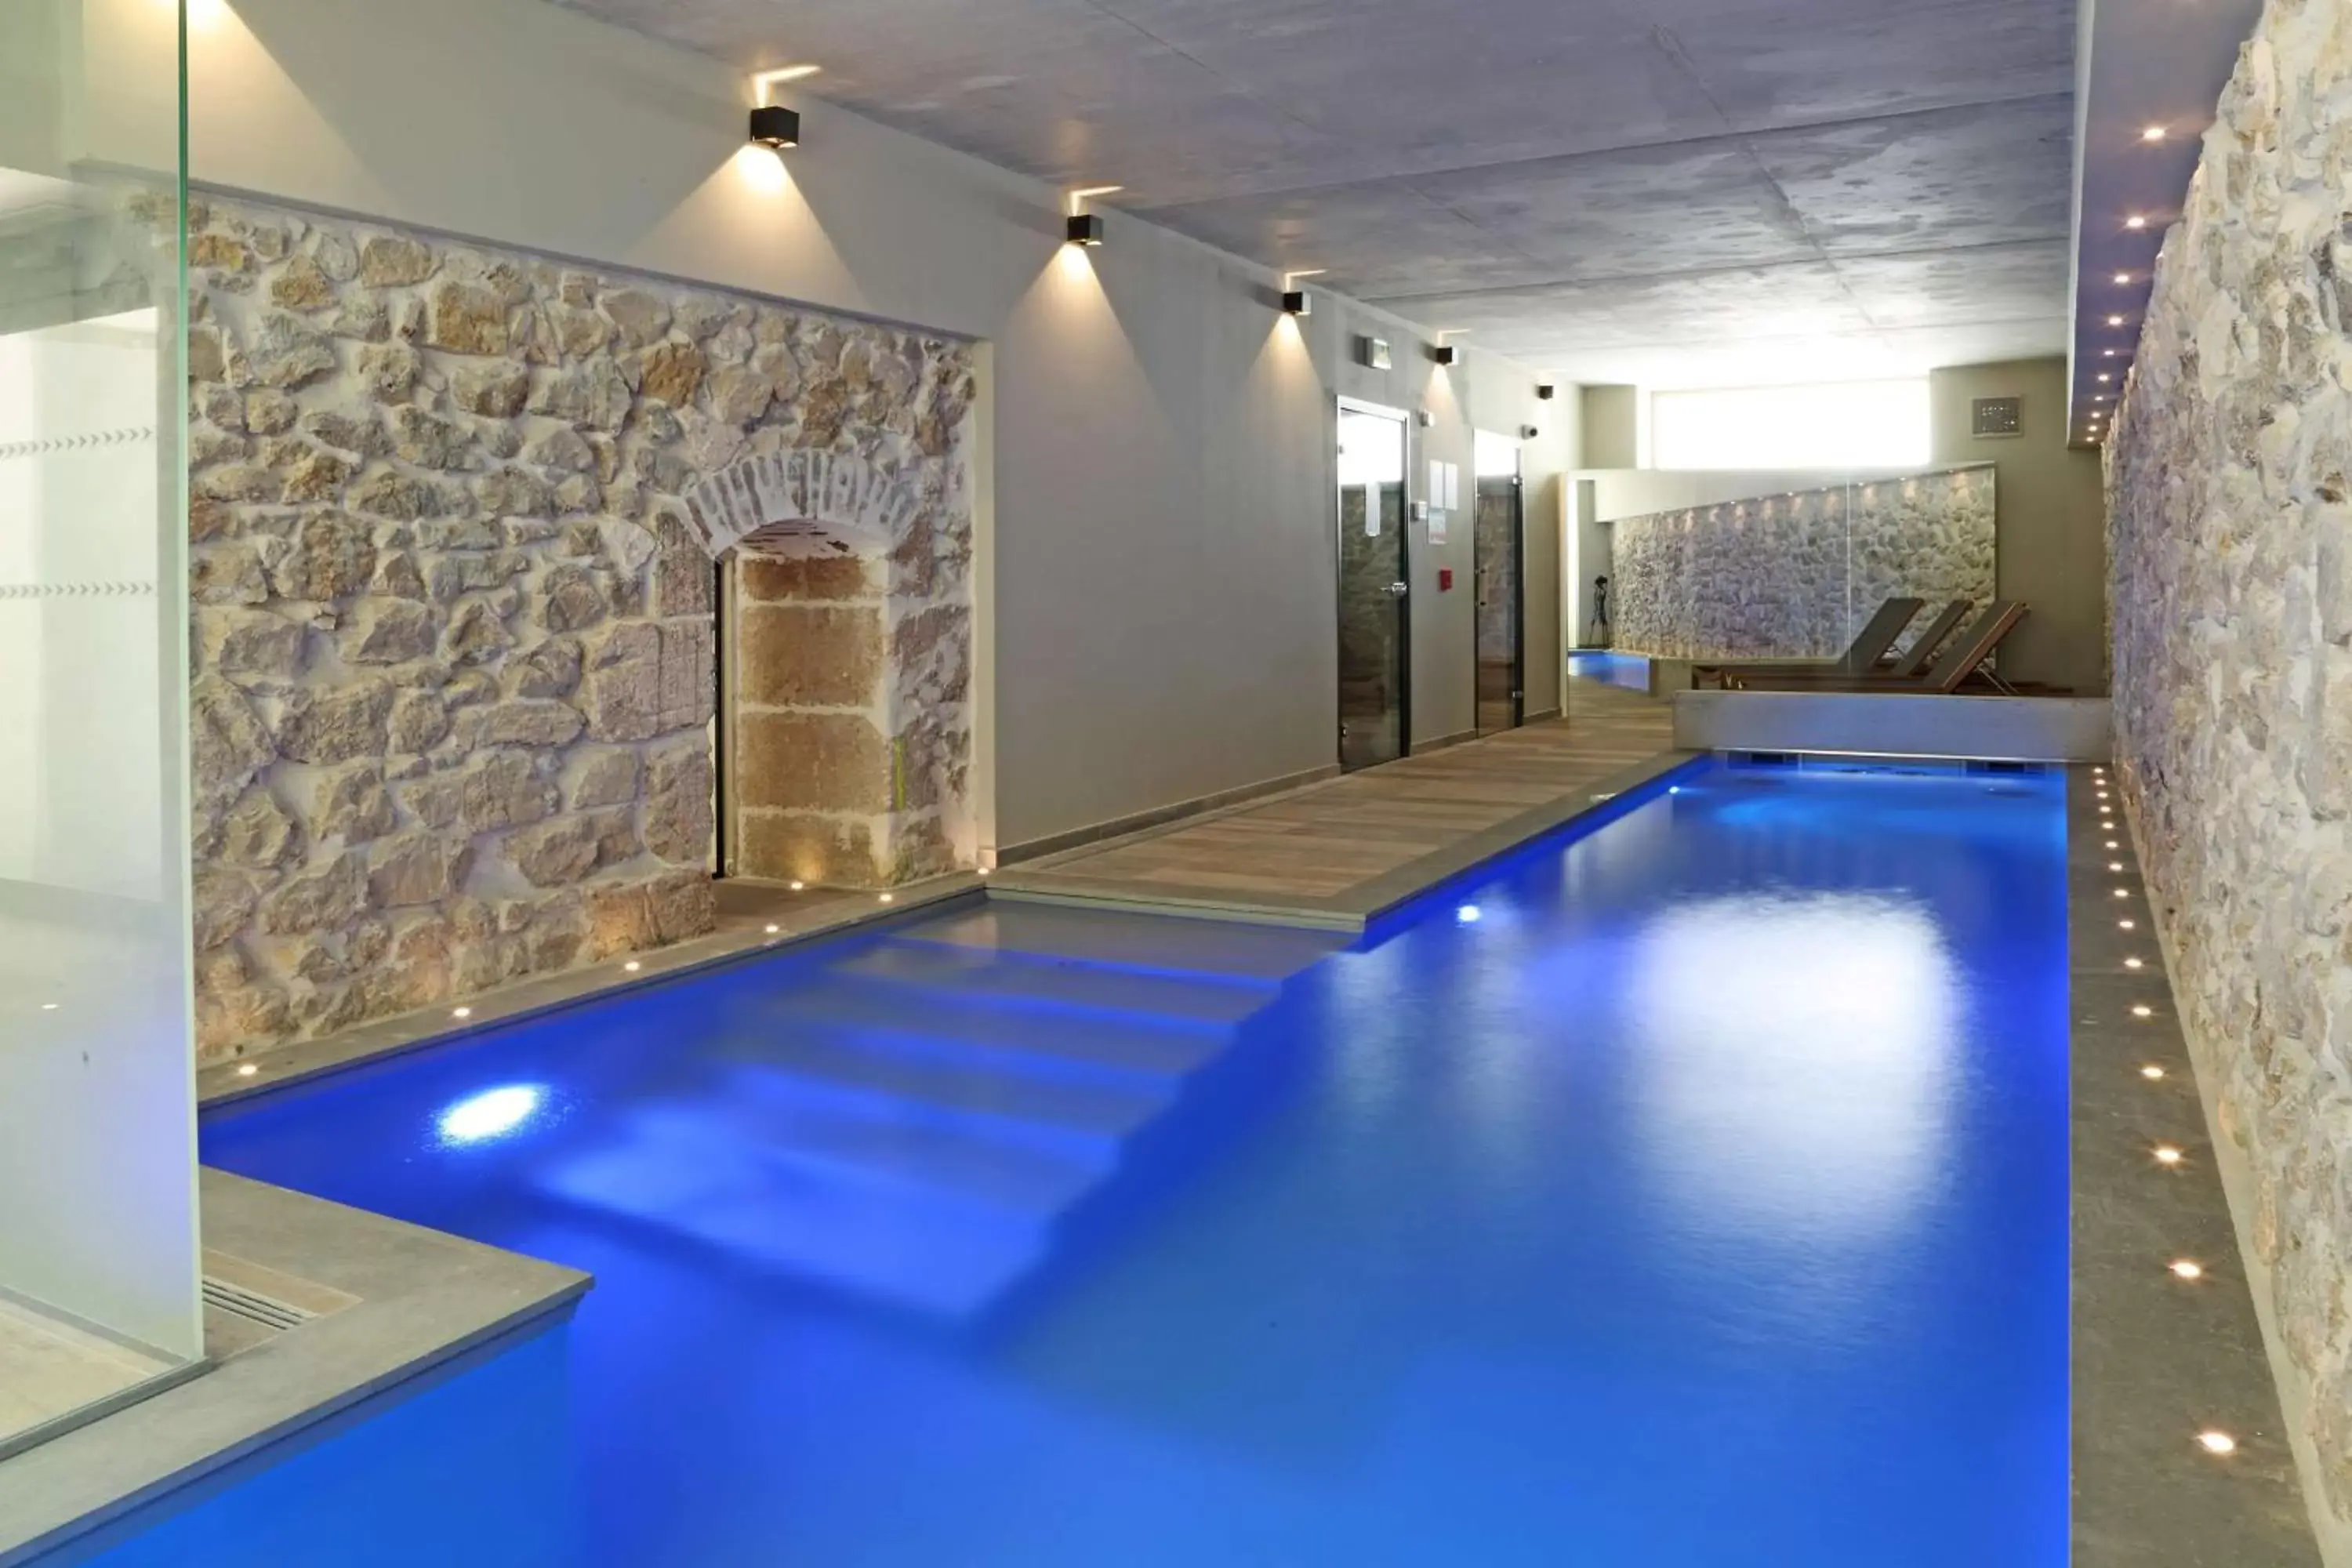 On site, Swimming Pool in Best Western Plus Hôtel La Joliette